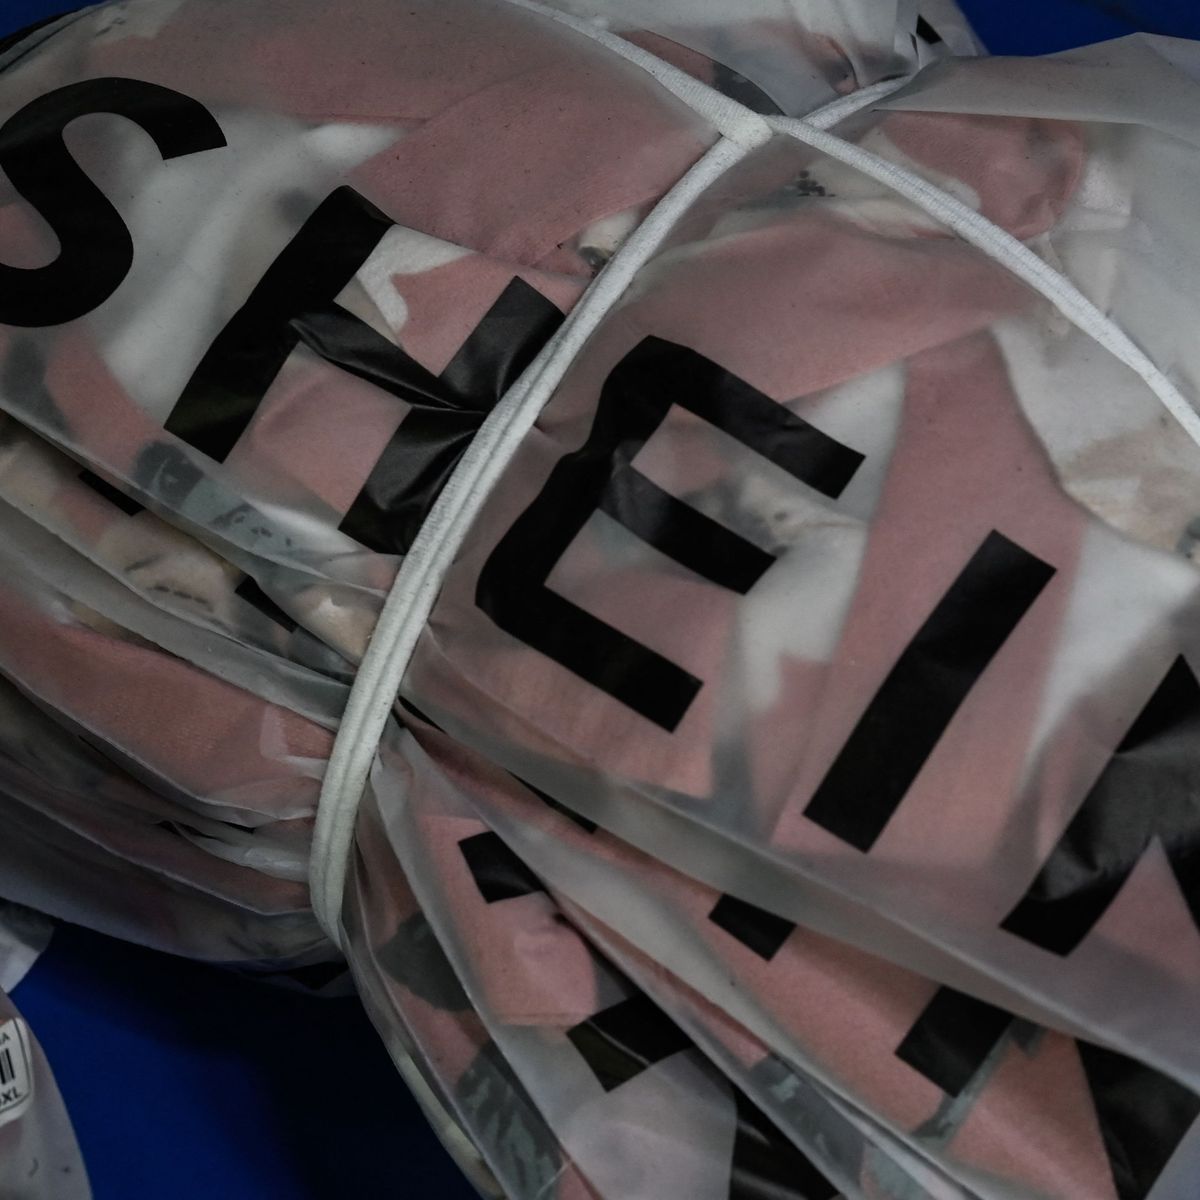 Dangerous Chemicals in Shein Clothes Breach EU Rules